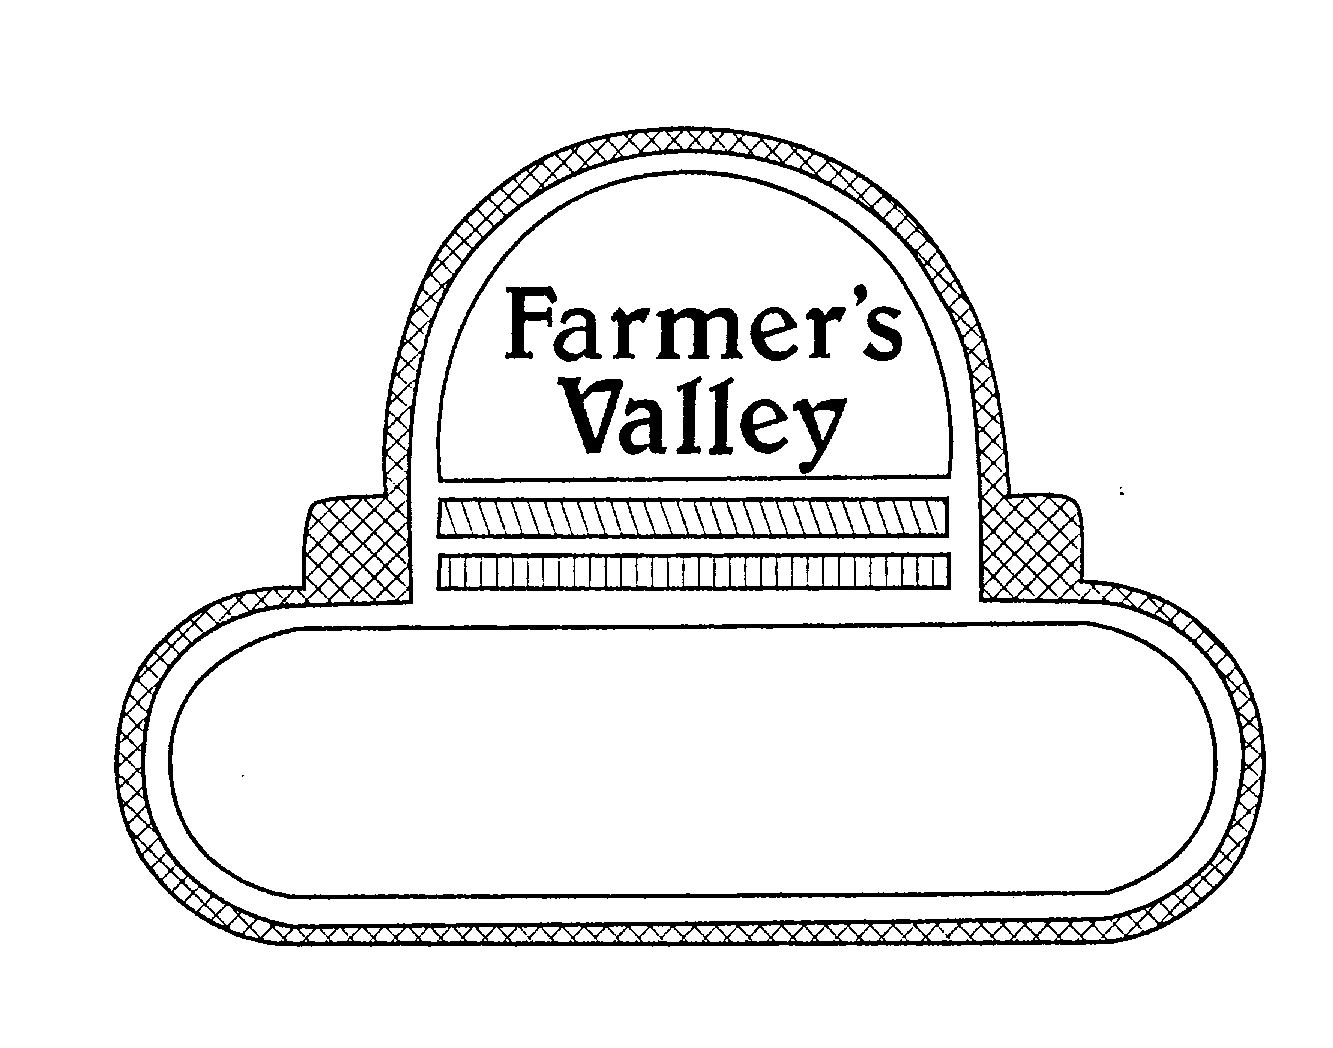 FARMER'S VALLEY